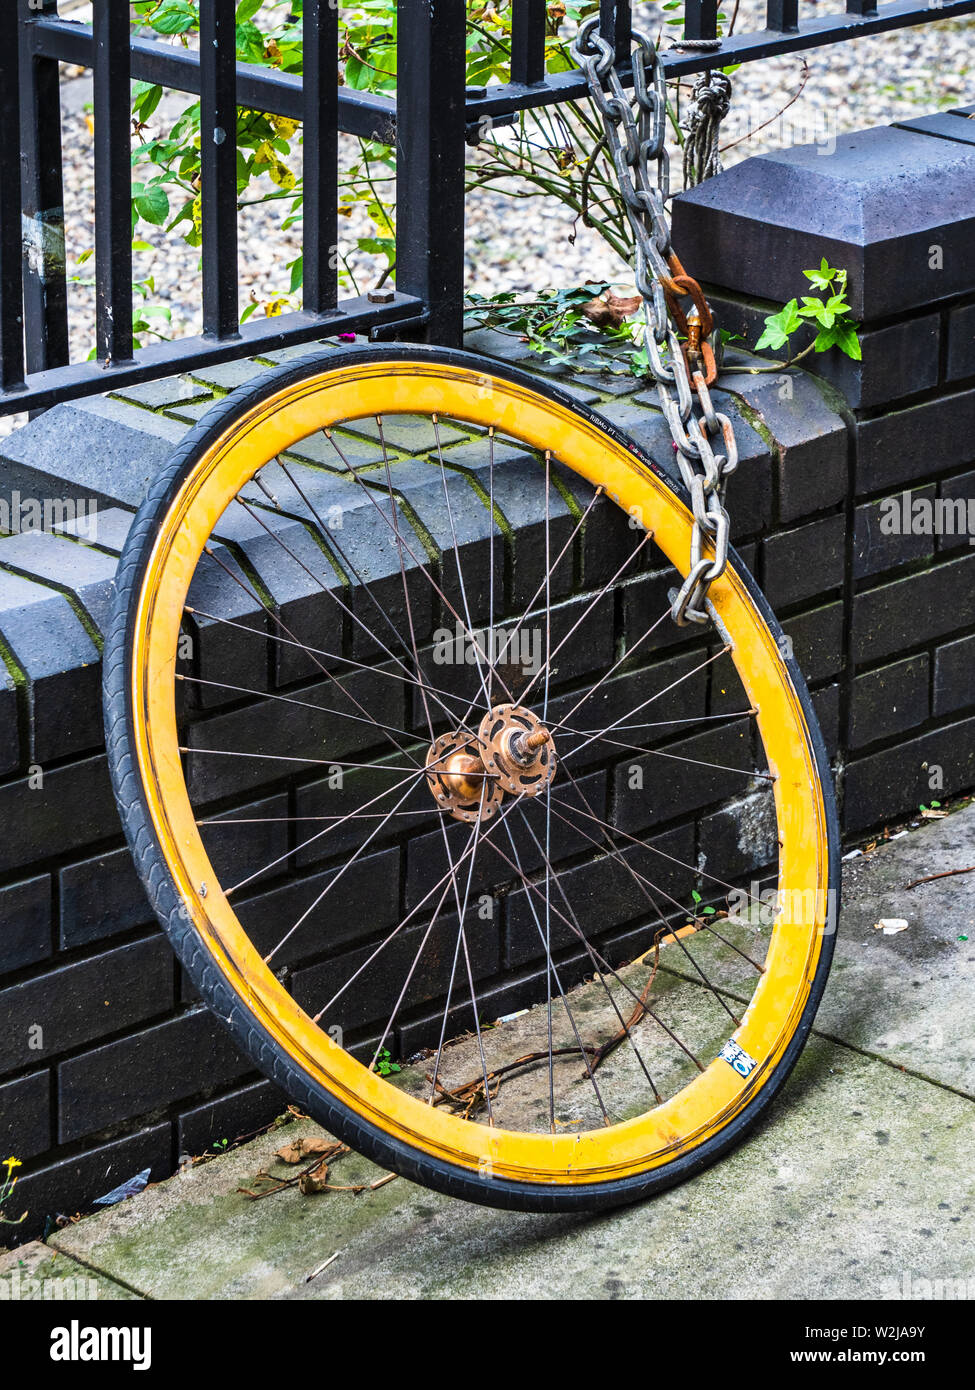 Roue de vélo à partir d'une bicyclette volée - seulement la roue avant a été verrouillé, le reste de la moto était facilement volés. Banque D'Images